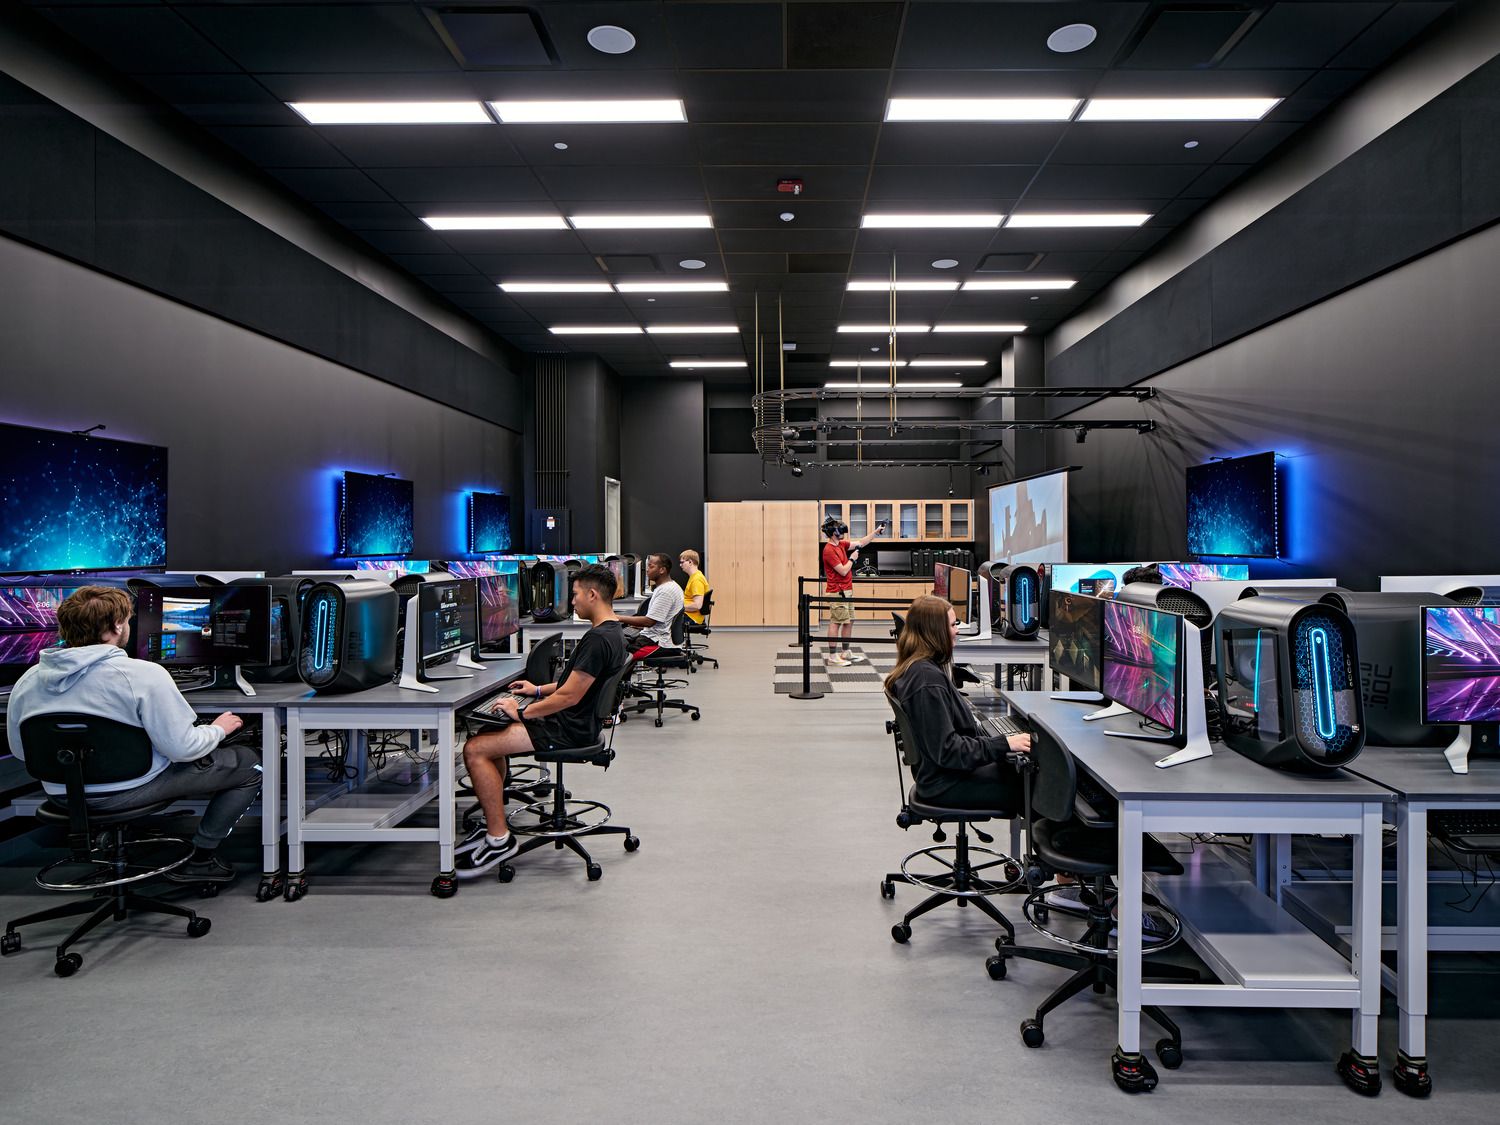 图片[7]|匹兹堡大学布拉德福德校区工程与信息技术大楼|ART-Arrakis | 建筑室内设计的创新与灵感